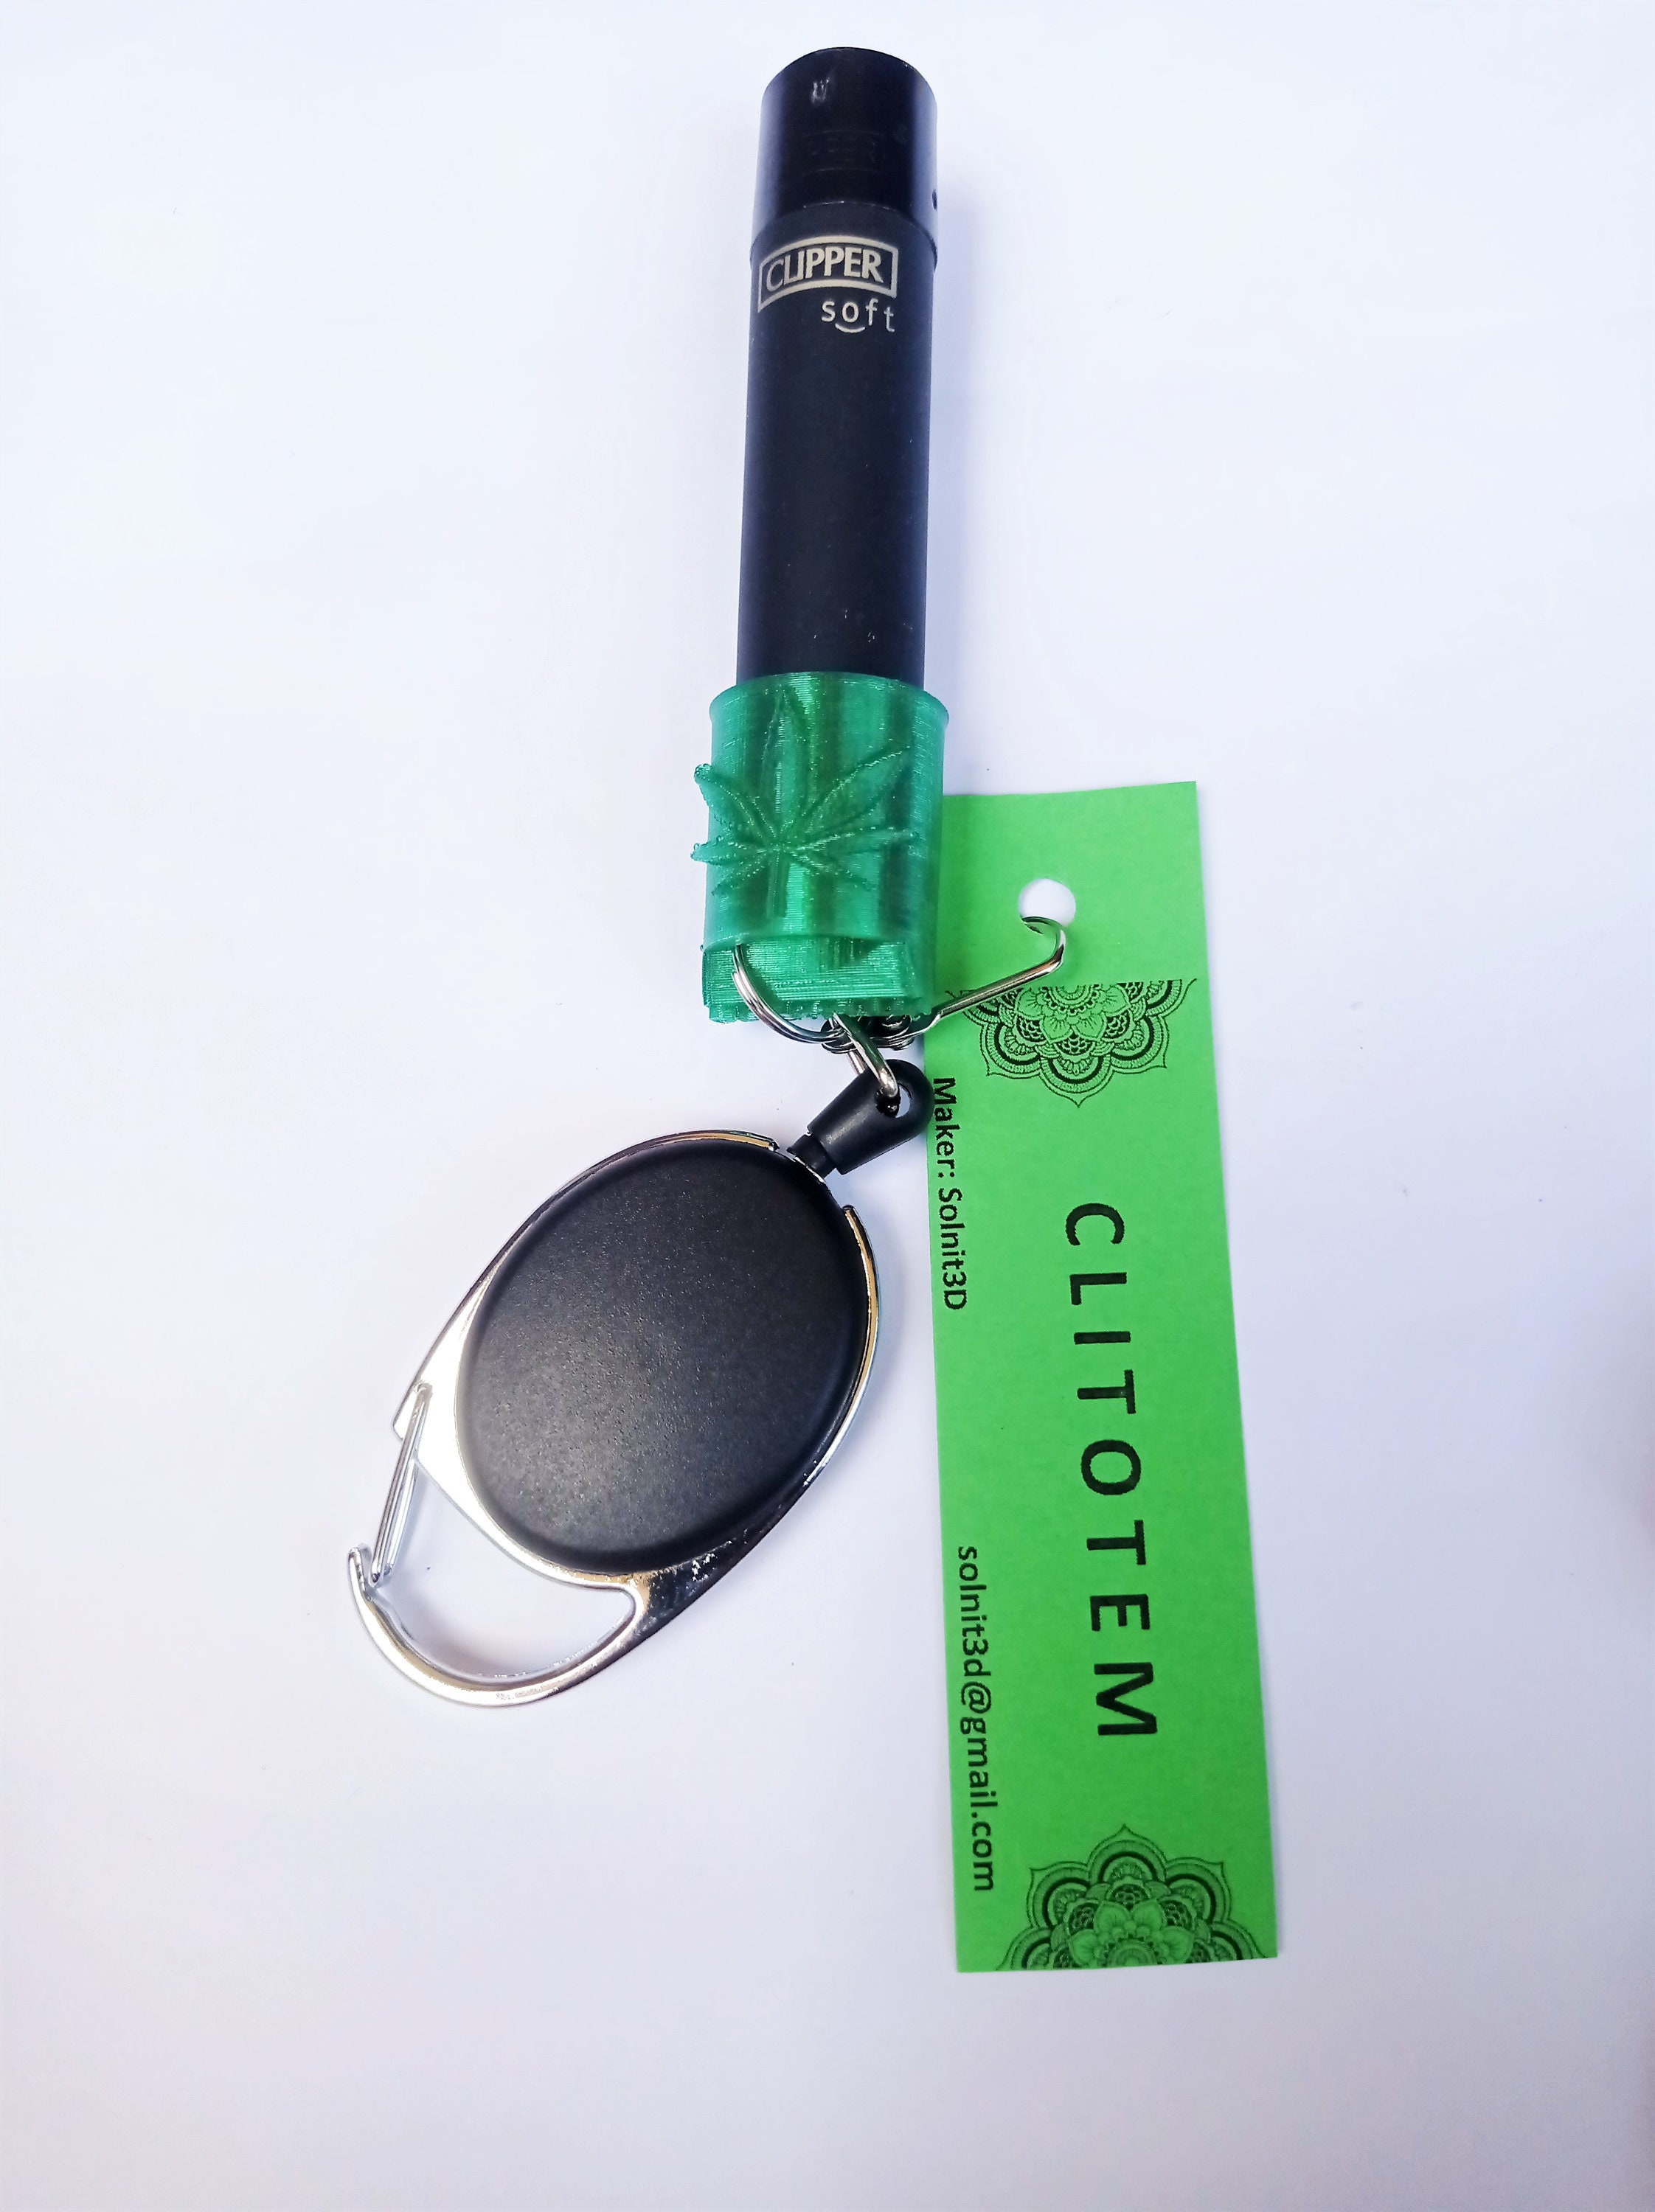 Bic lighter holder key chain or lanyard lighter case cover 3D model 3D  printable